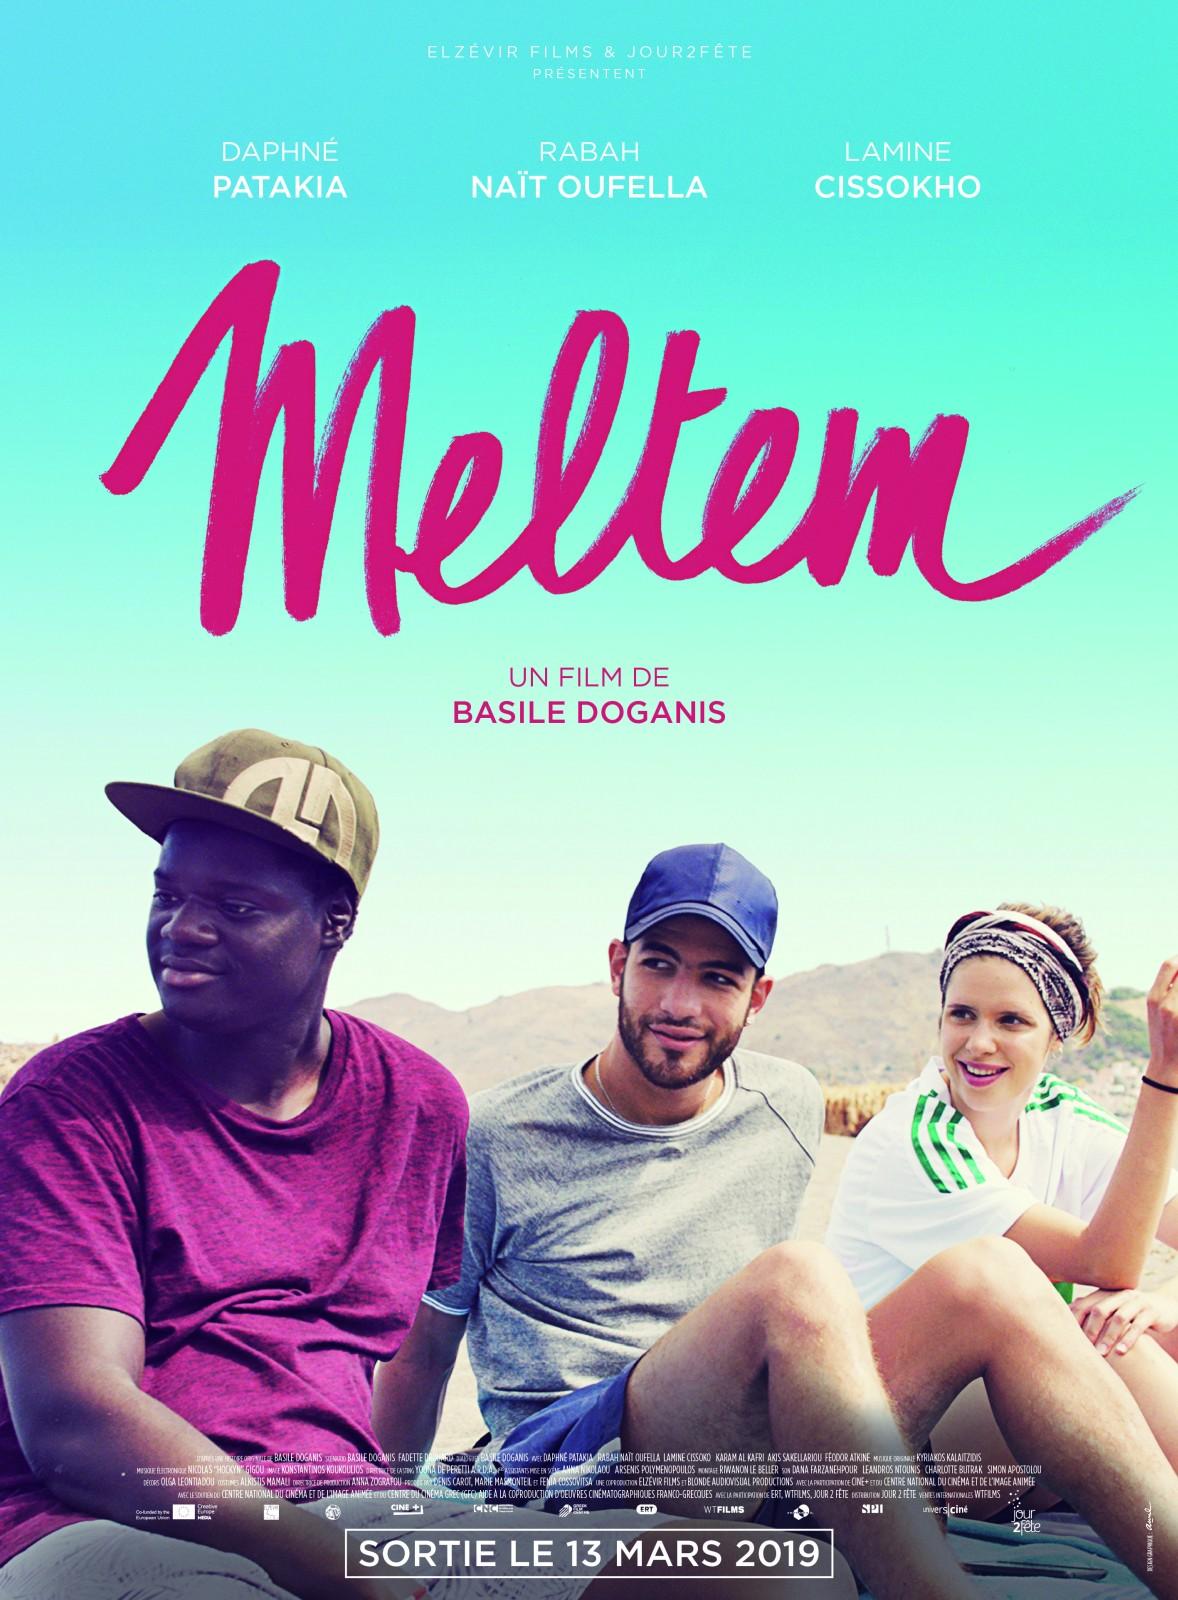 Meltem (soundtrack-only on digital)